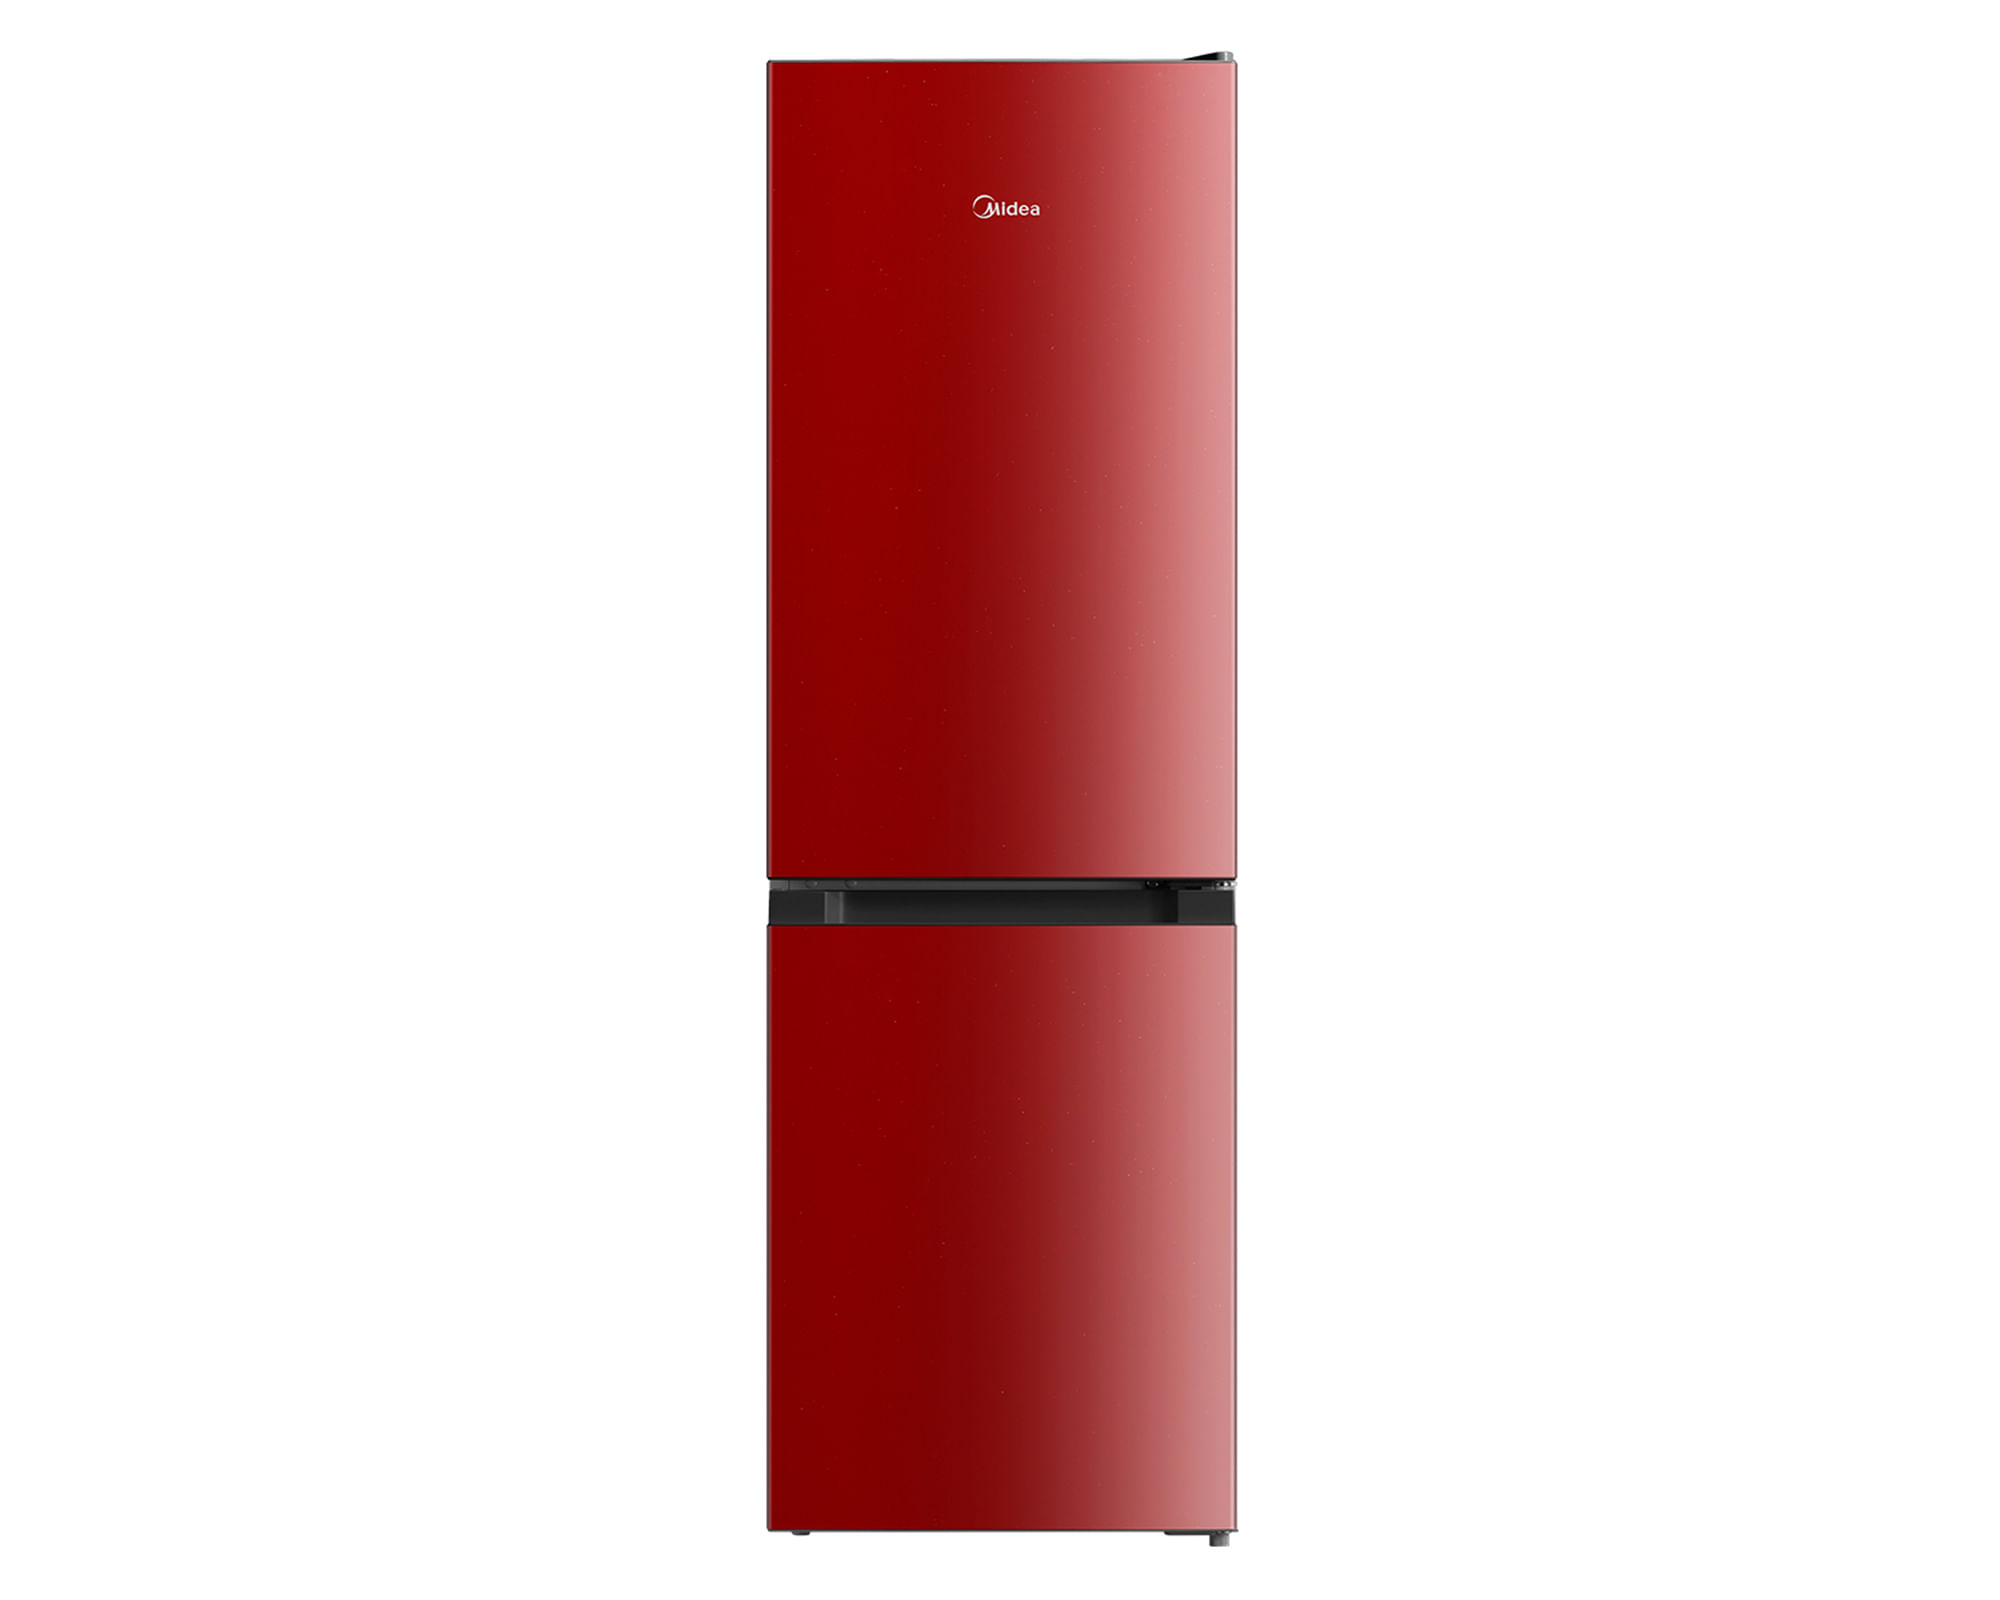 Refrigerador Bottom Freezer frío directo 169 litros rojo